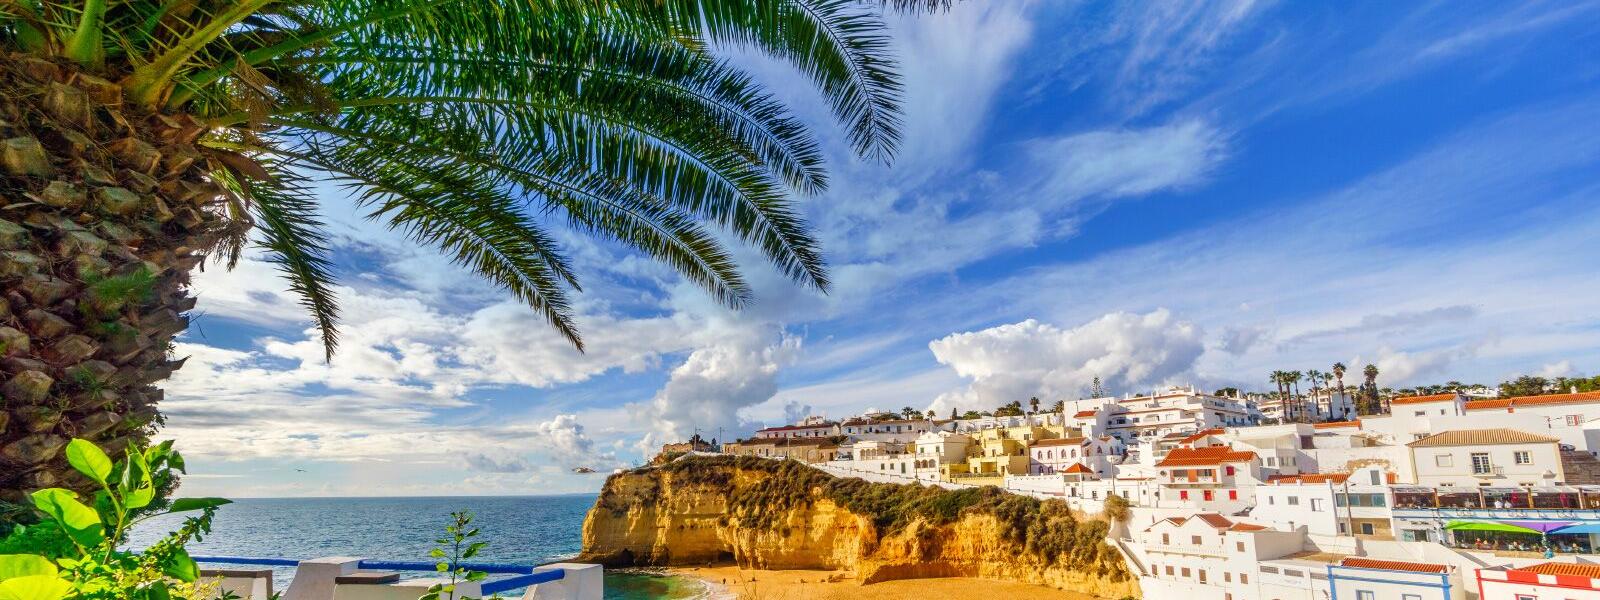 Blick auf Strand und die Stadt Carvoeiro an der Algarve, Portugal